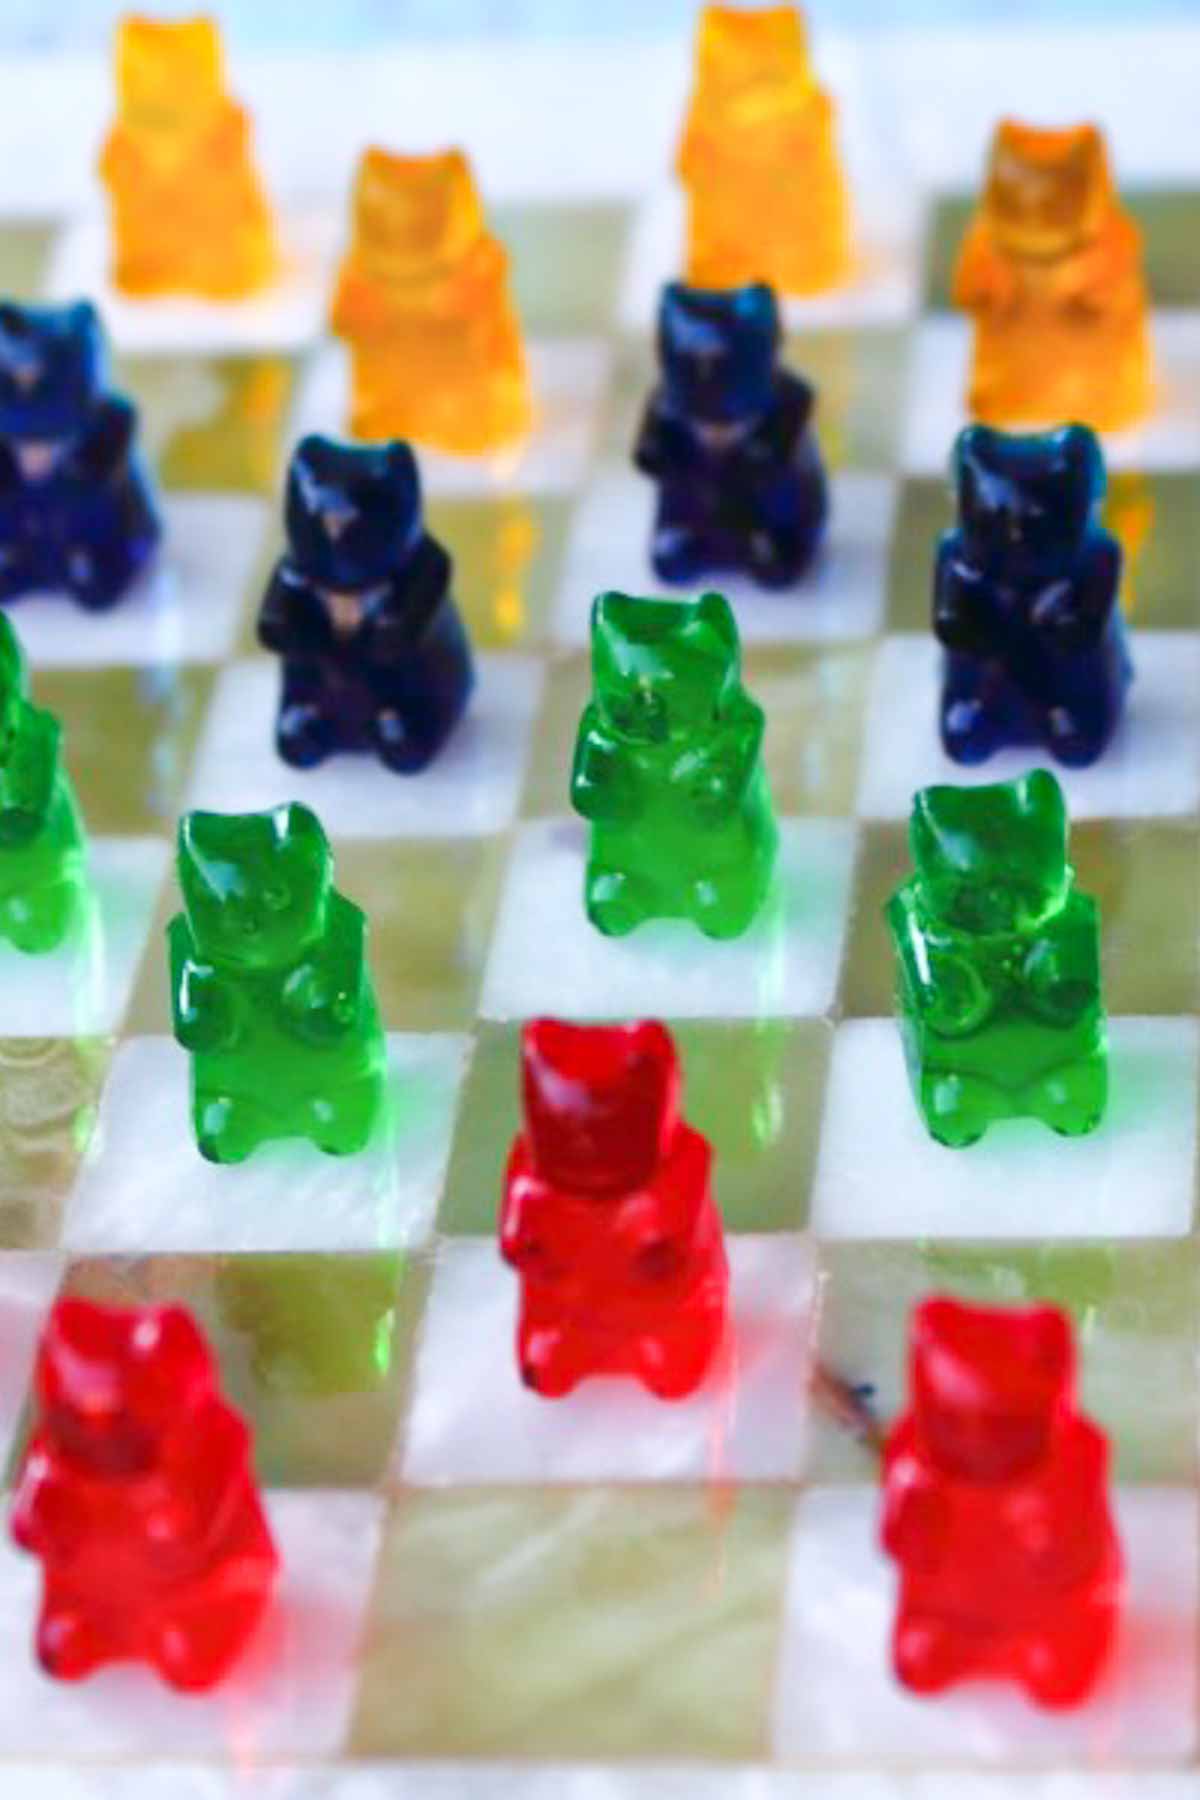 Sugar-Free Gummy Bears on a chess board.